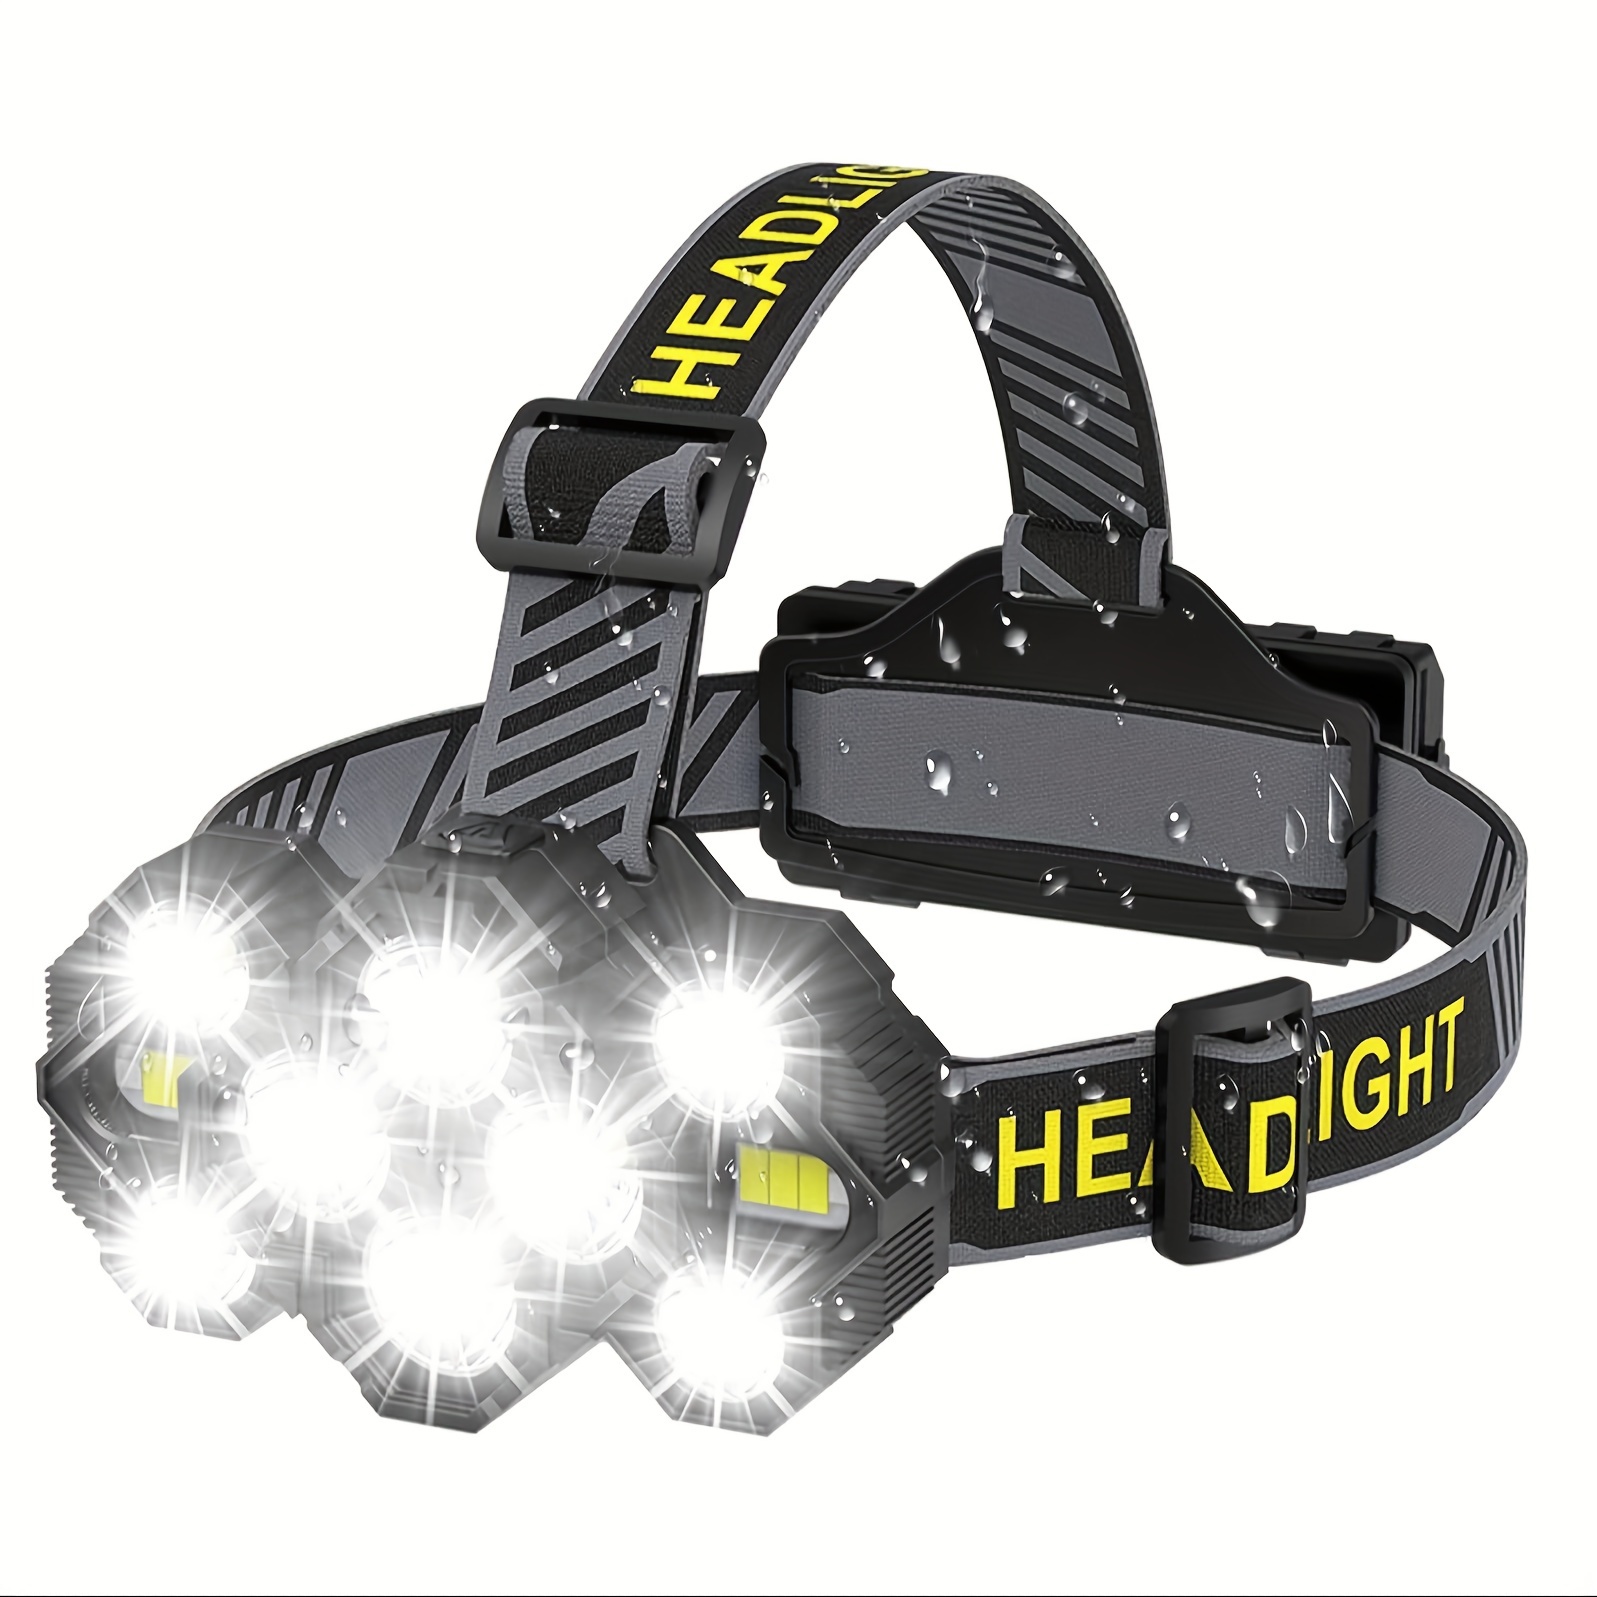 Lampe Frontale à LED, Lampe Frontale COB Rechargeable par USB, Lampe  Frontale réglable de 1500 lumens, légère et étanche pour Le Cyclisme, Le  Camping, la randonnée, la pêche, Les urgences : 